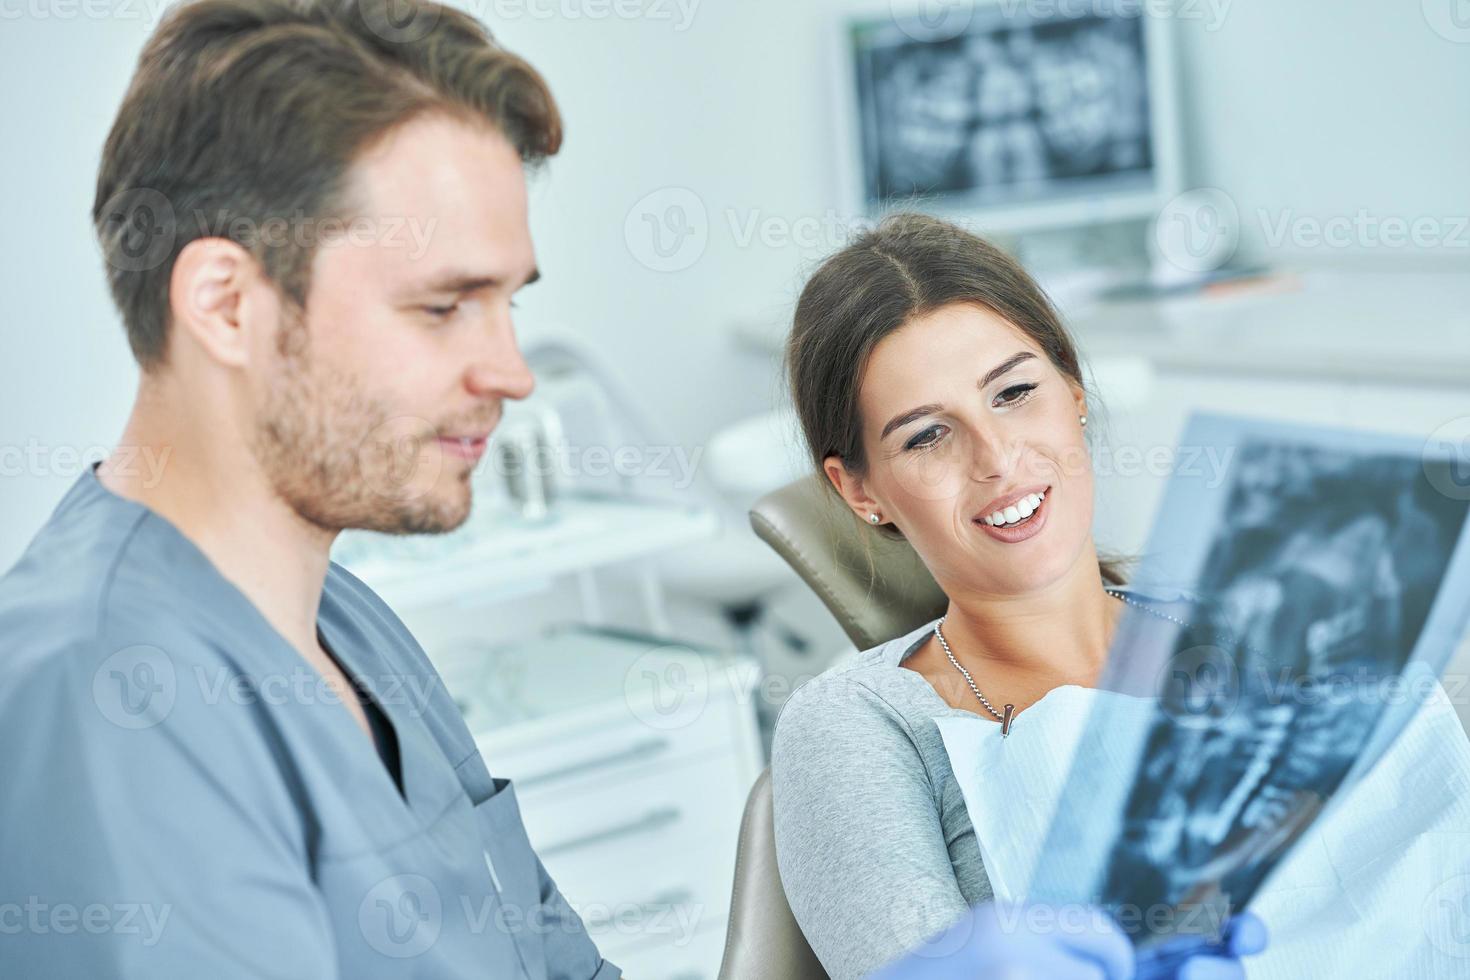 männlicher zahnarzt und frau diskutieren röntgenergebnisse in der zahnarztpraxis foto